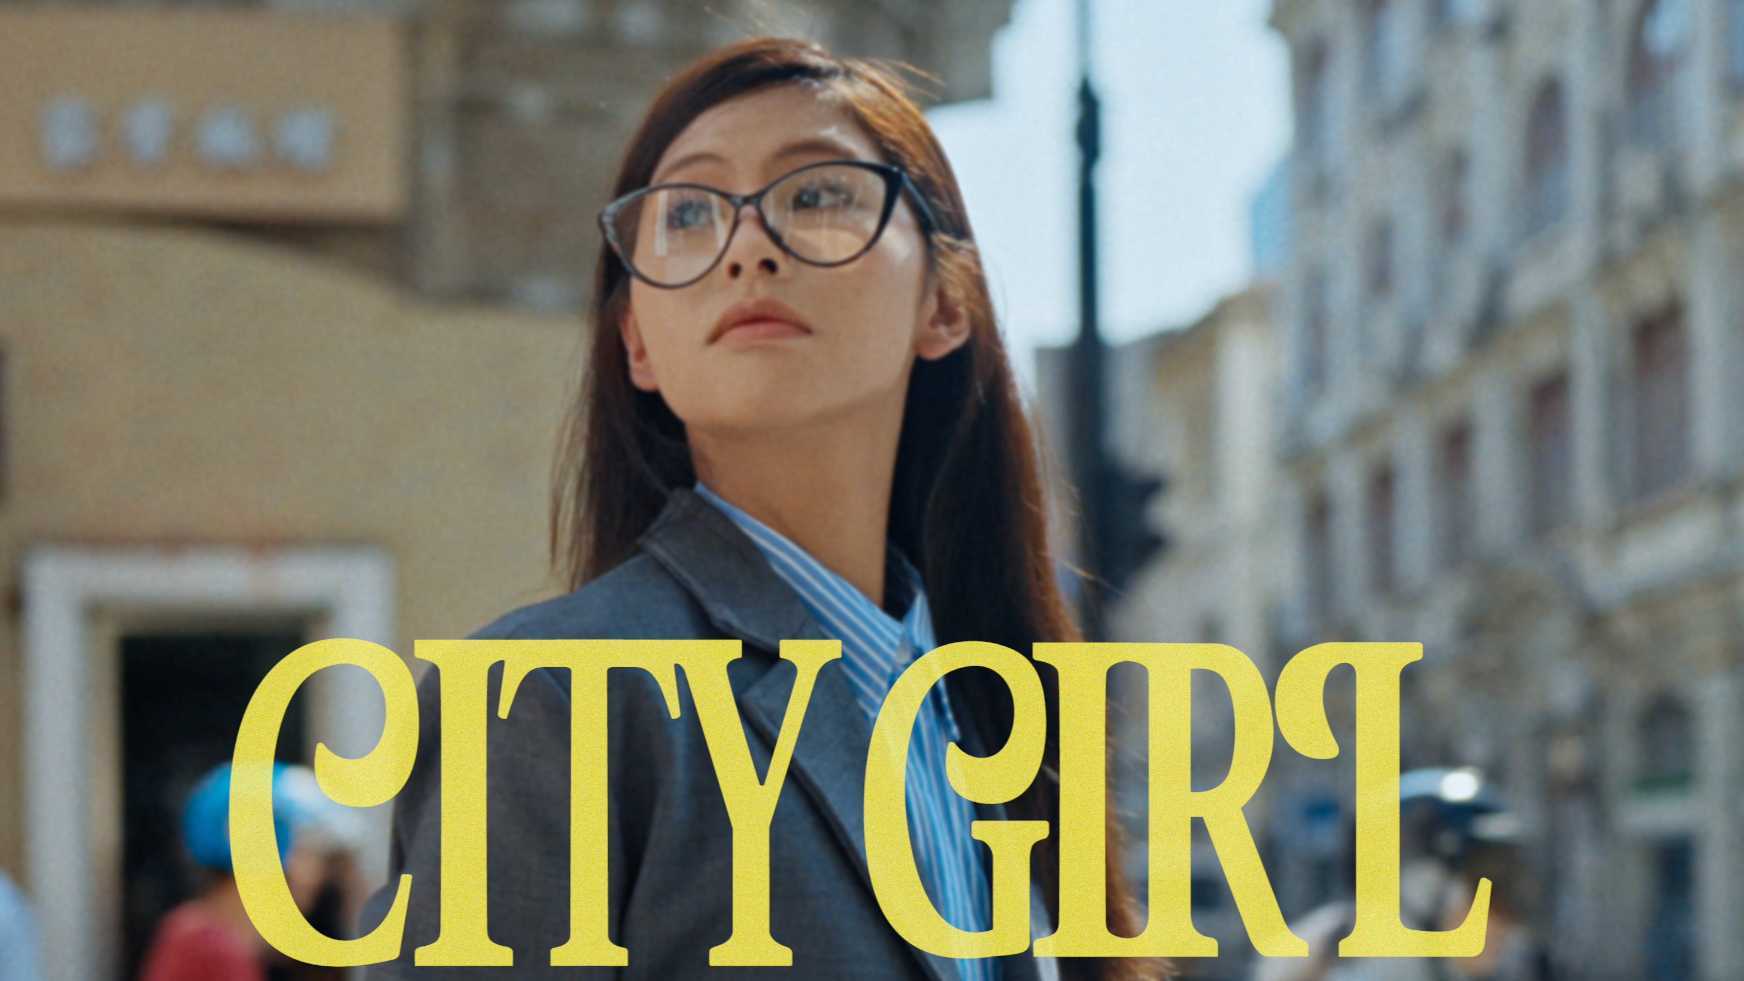 泳恩JOANNNE「City Girl」Official Music Video